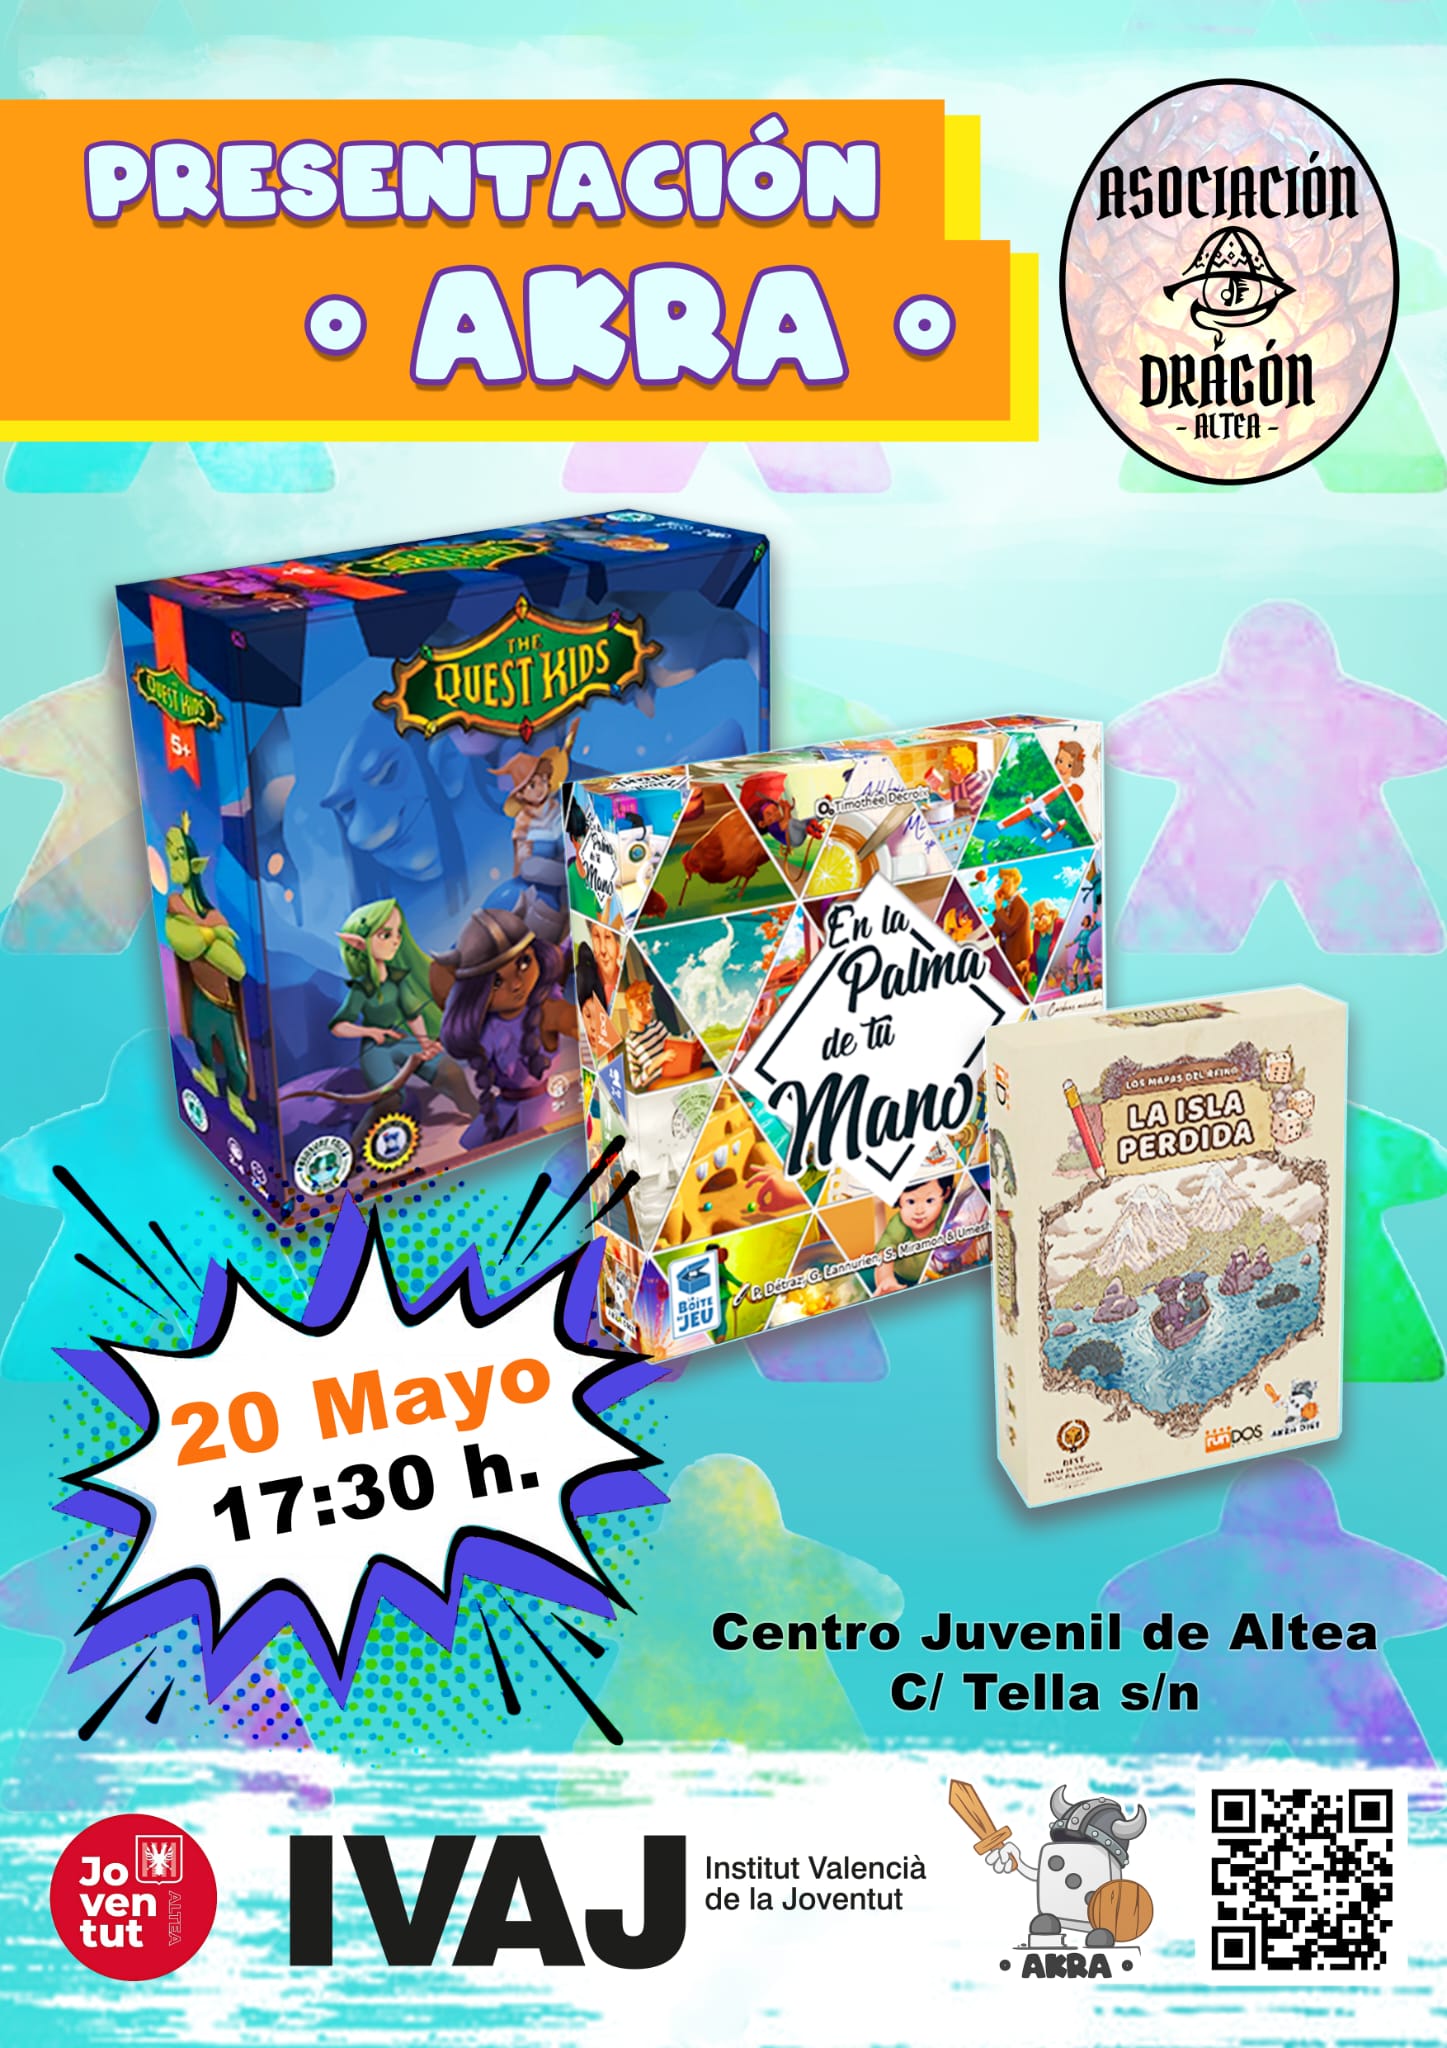 El Centro Juvenil acogerá este sábado, 20 de mayo a las 17:30 horas, la presentación de la editorial alicantina Akra, que hará demostraciones de sus juegos para niños y mayores.